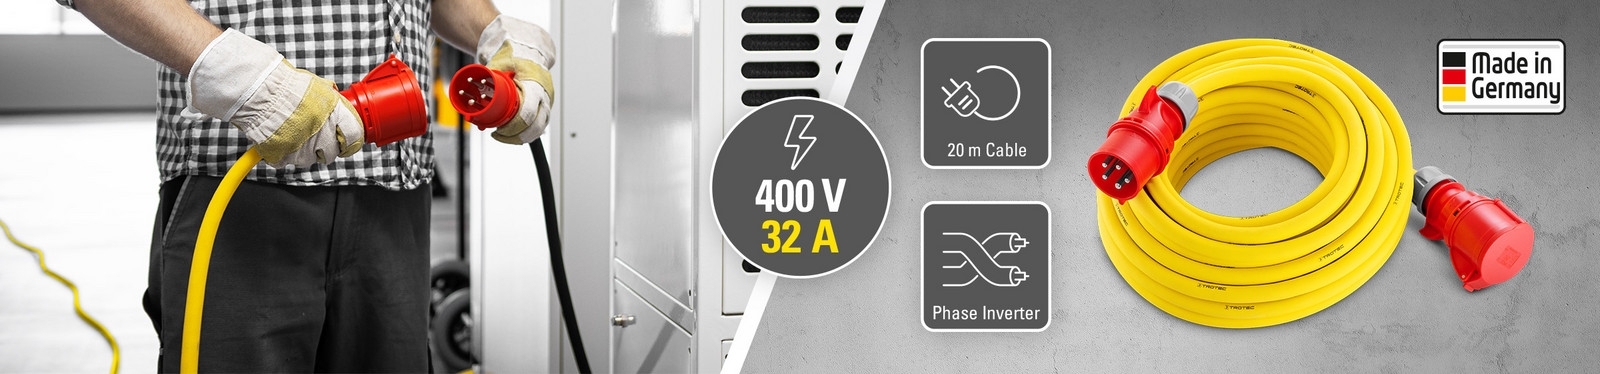 Profi-produžni kabel 400 V (32 A) – Made in Germany